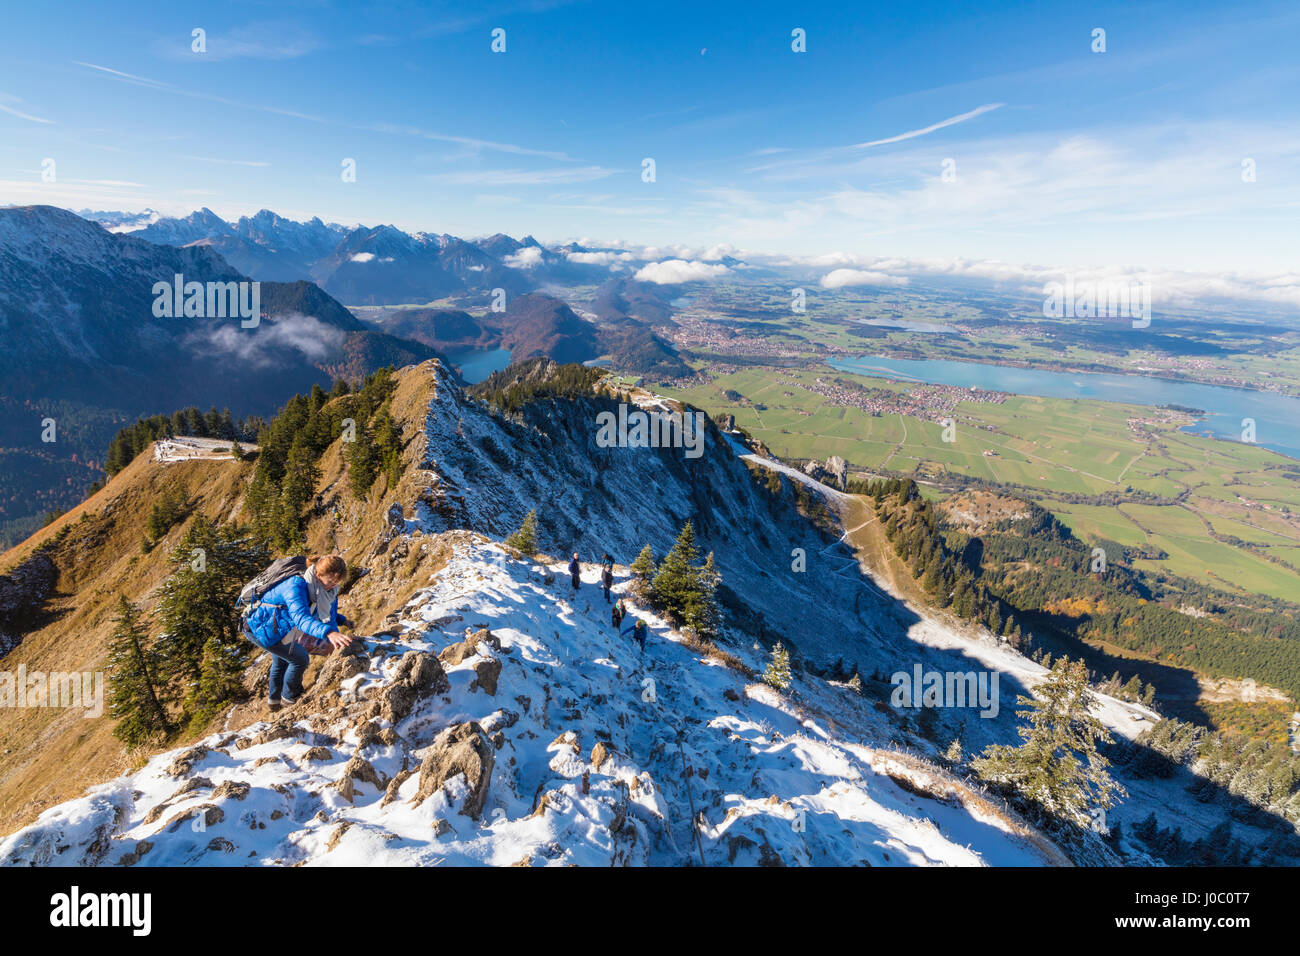 Gli alpinisti sulla ripida cresta ricoperta di neve nelle Alpi Ammergau, Tegelberg, Fussen, Baviera, Germania Foto Stock